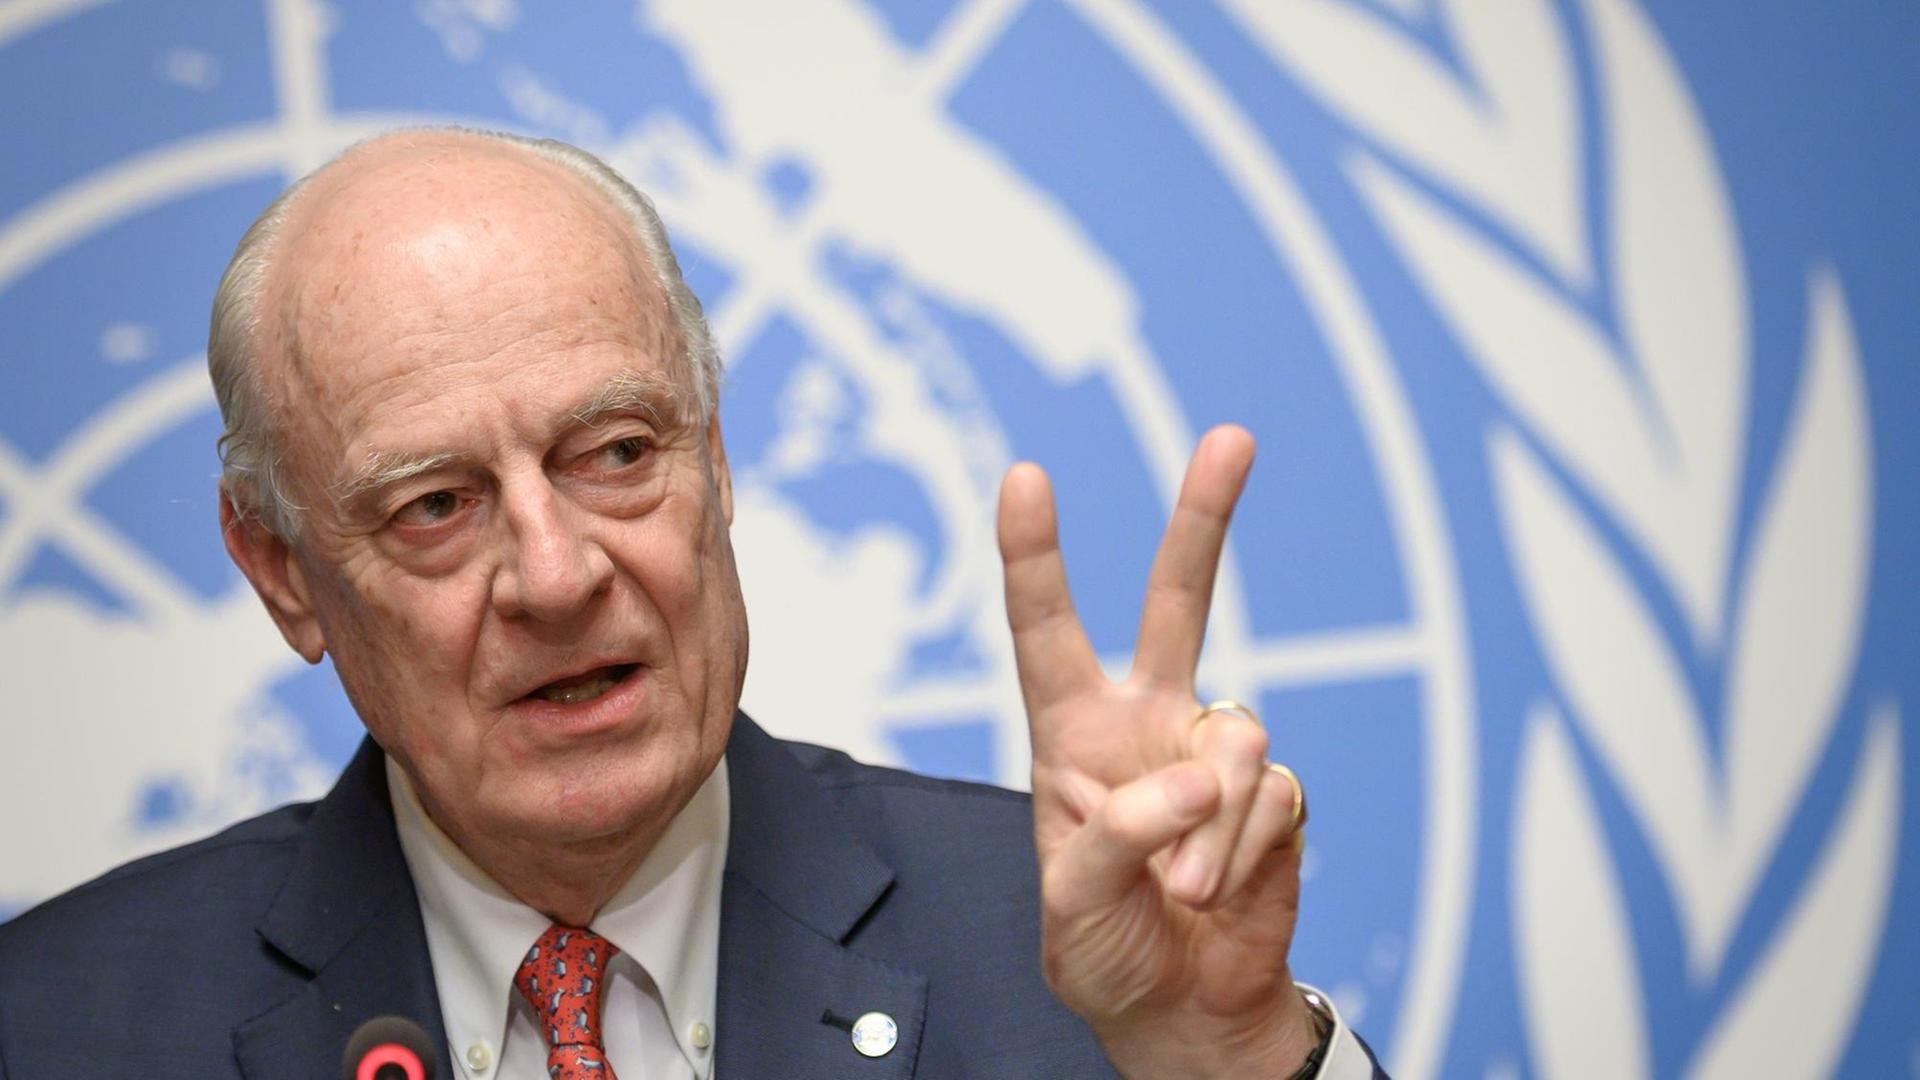 Uno-Syrienbeauftragter Staffan de Mistura bei der Presskonferenz zur Einigung auf einen Verfassungsauschusses für Syrien in Genf. Er steht vor einer blauen Wand mit dem Wappen der Vereinten Nationen und formt sein linke Hand zum Peace-Zeichen, indem er Zeige- und Mittelfinger hebt.